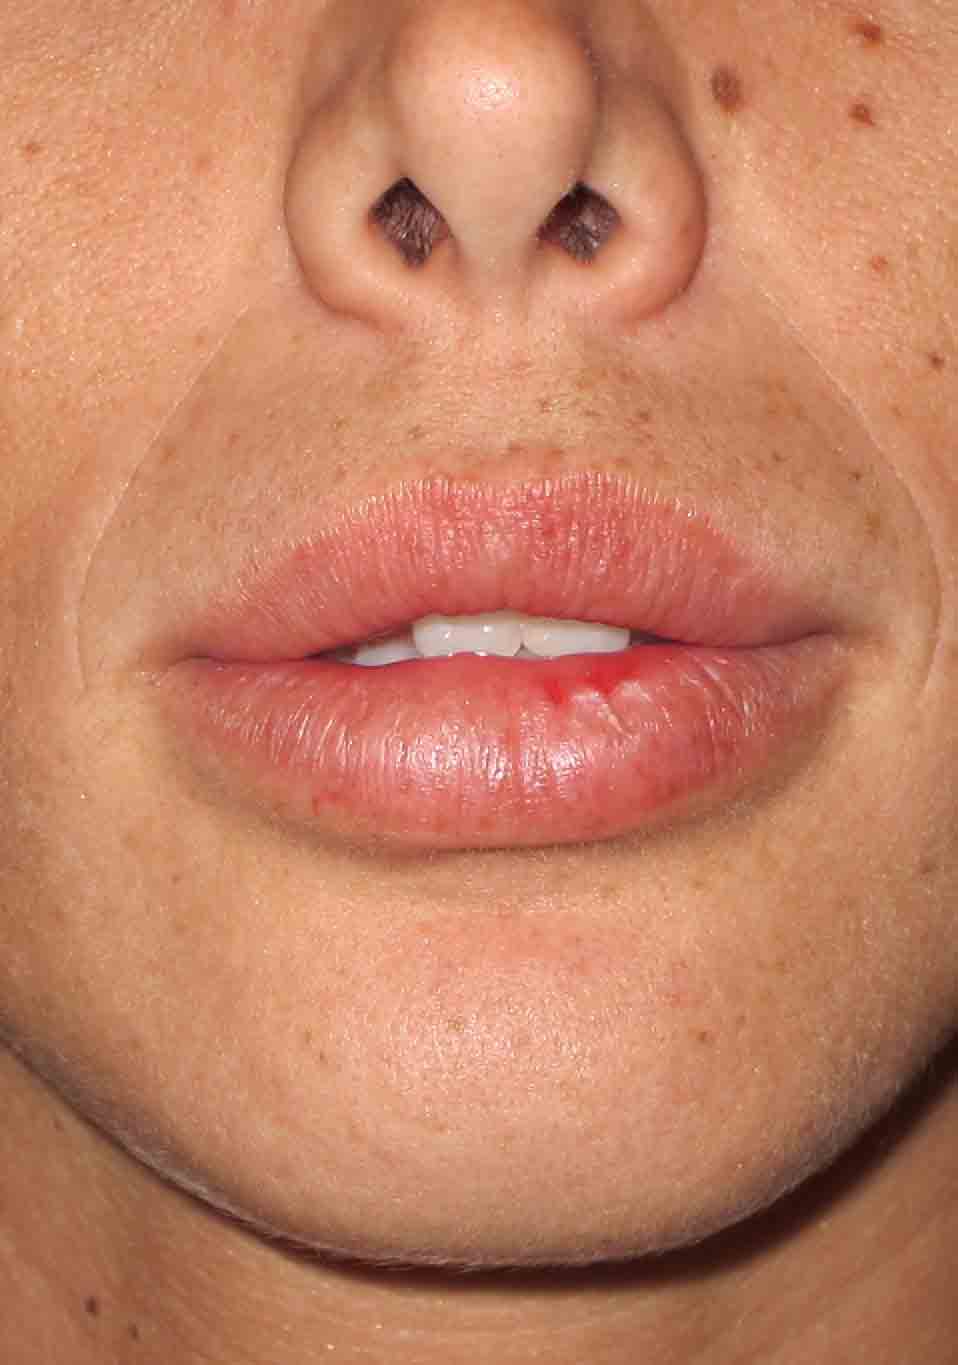 לאחר תיקון לעיבוי שפתיים